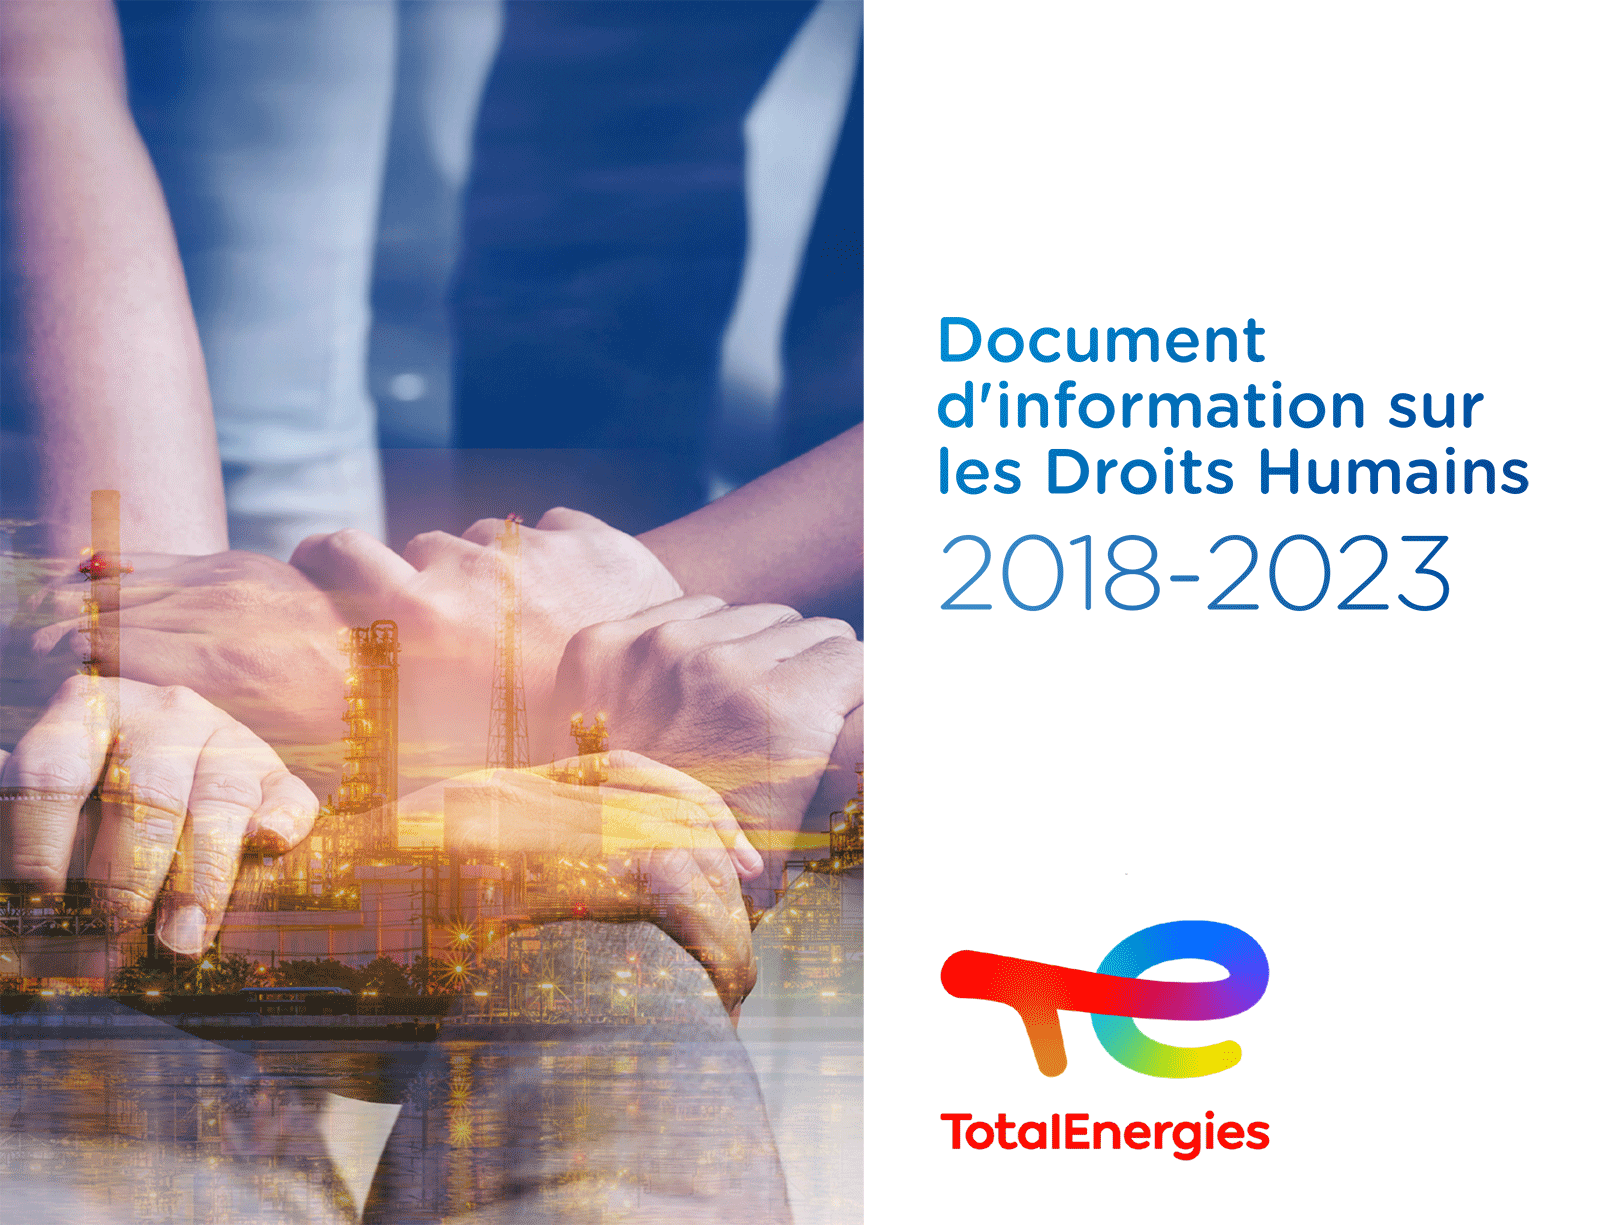 Document d'information sur les Droits Humains 2018-2023